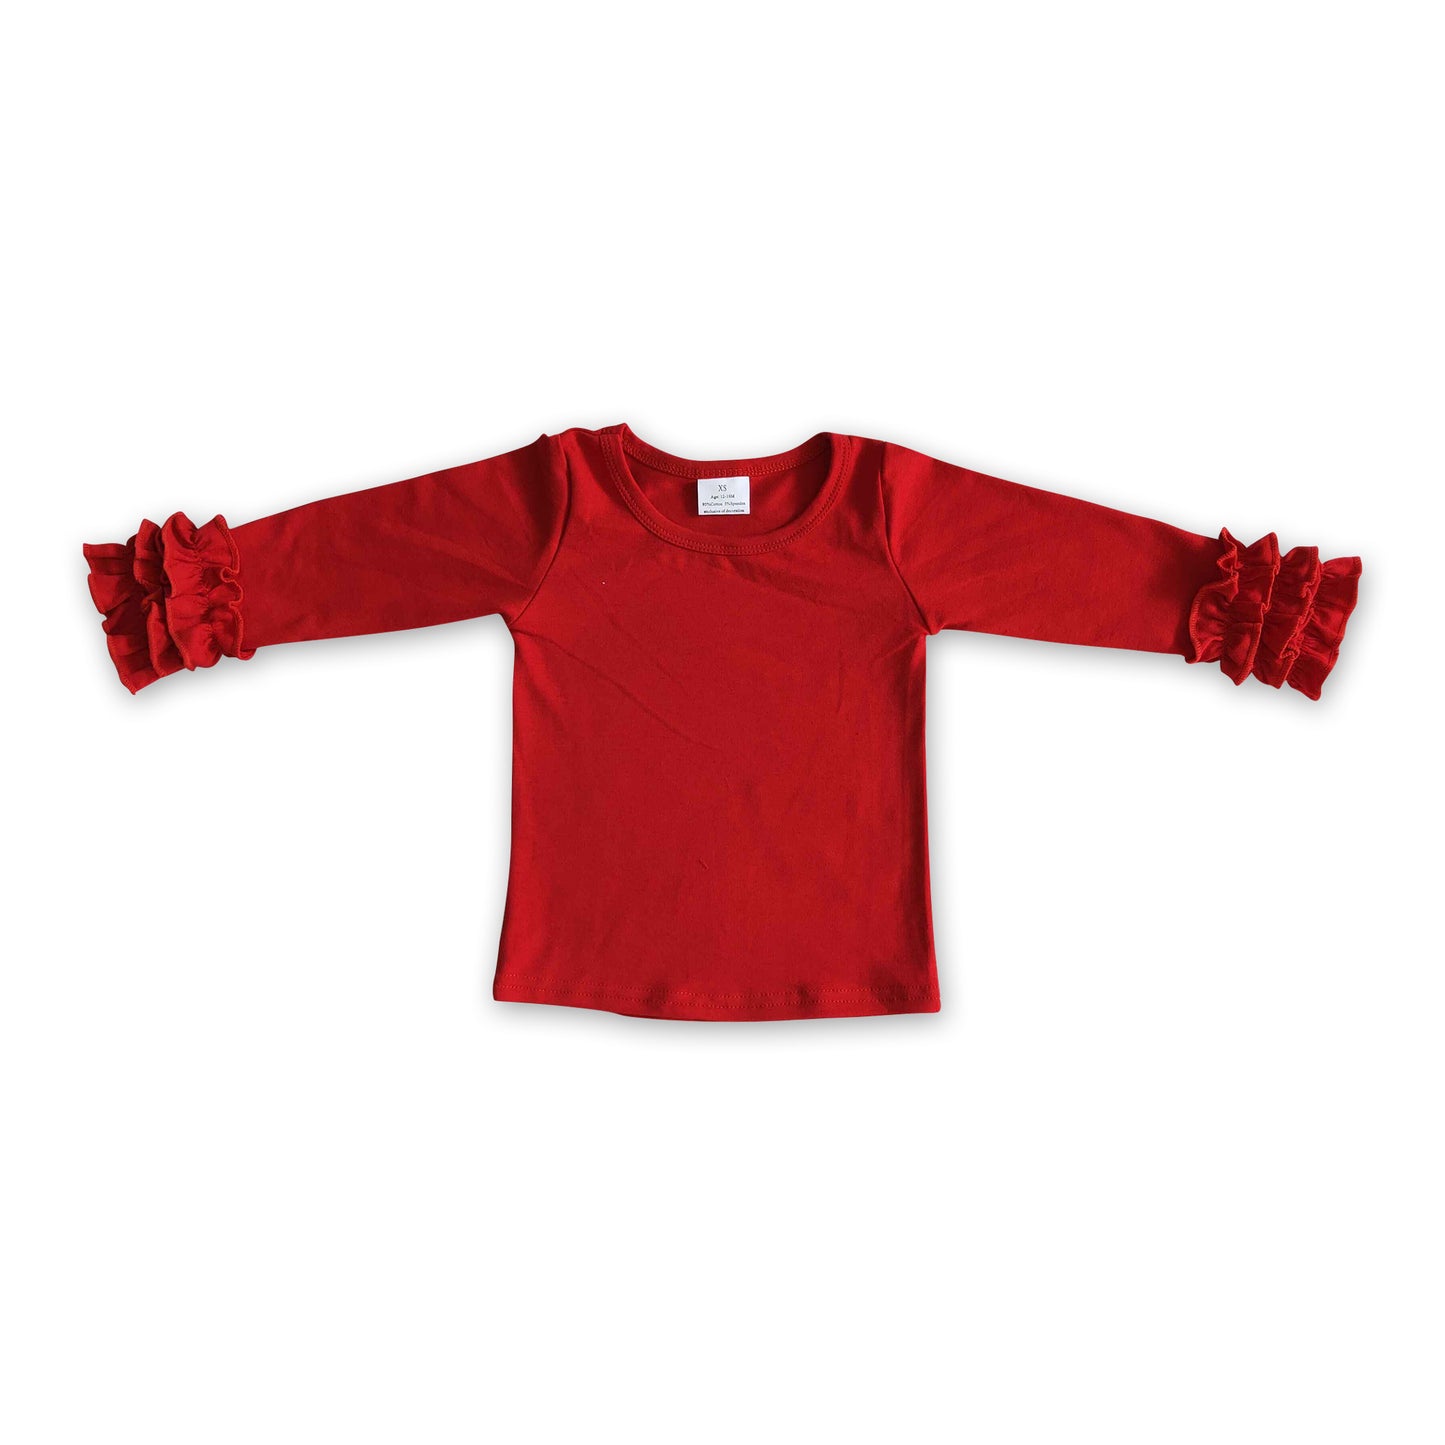 Red cotton icing ruffle top girls shirt